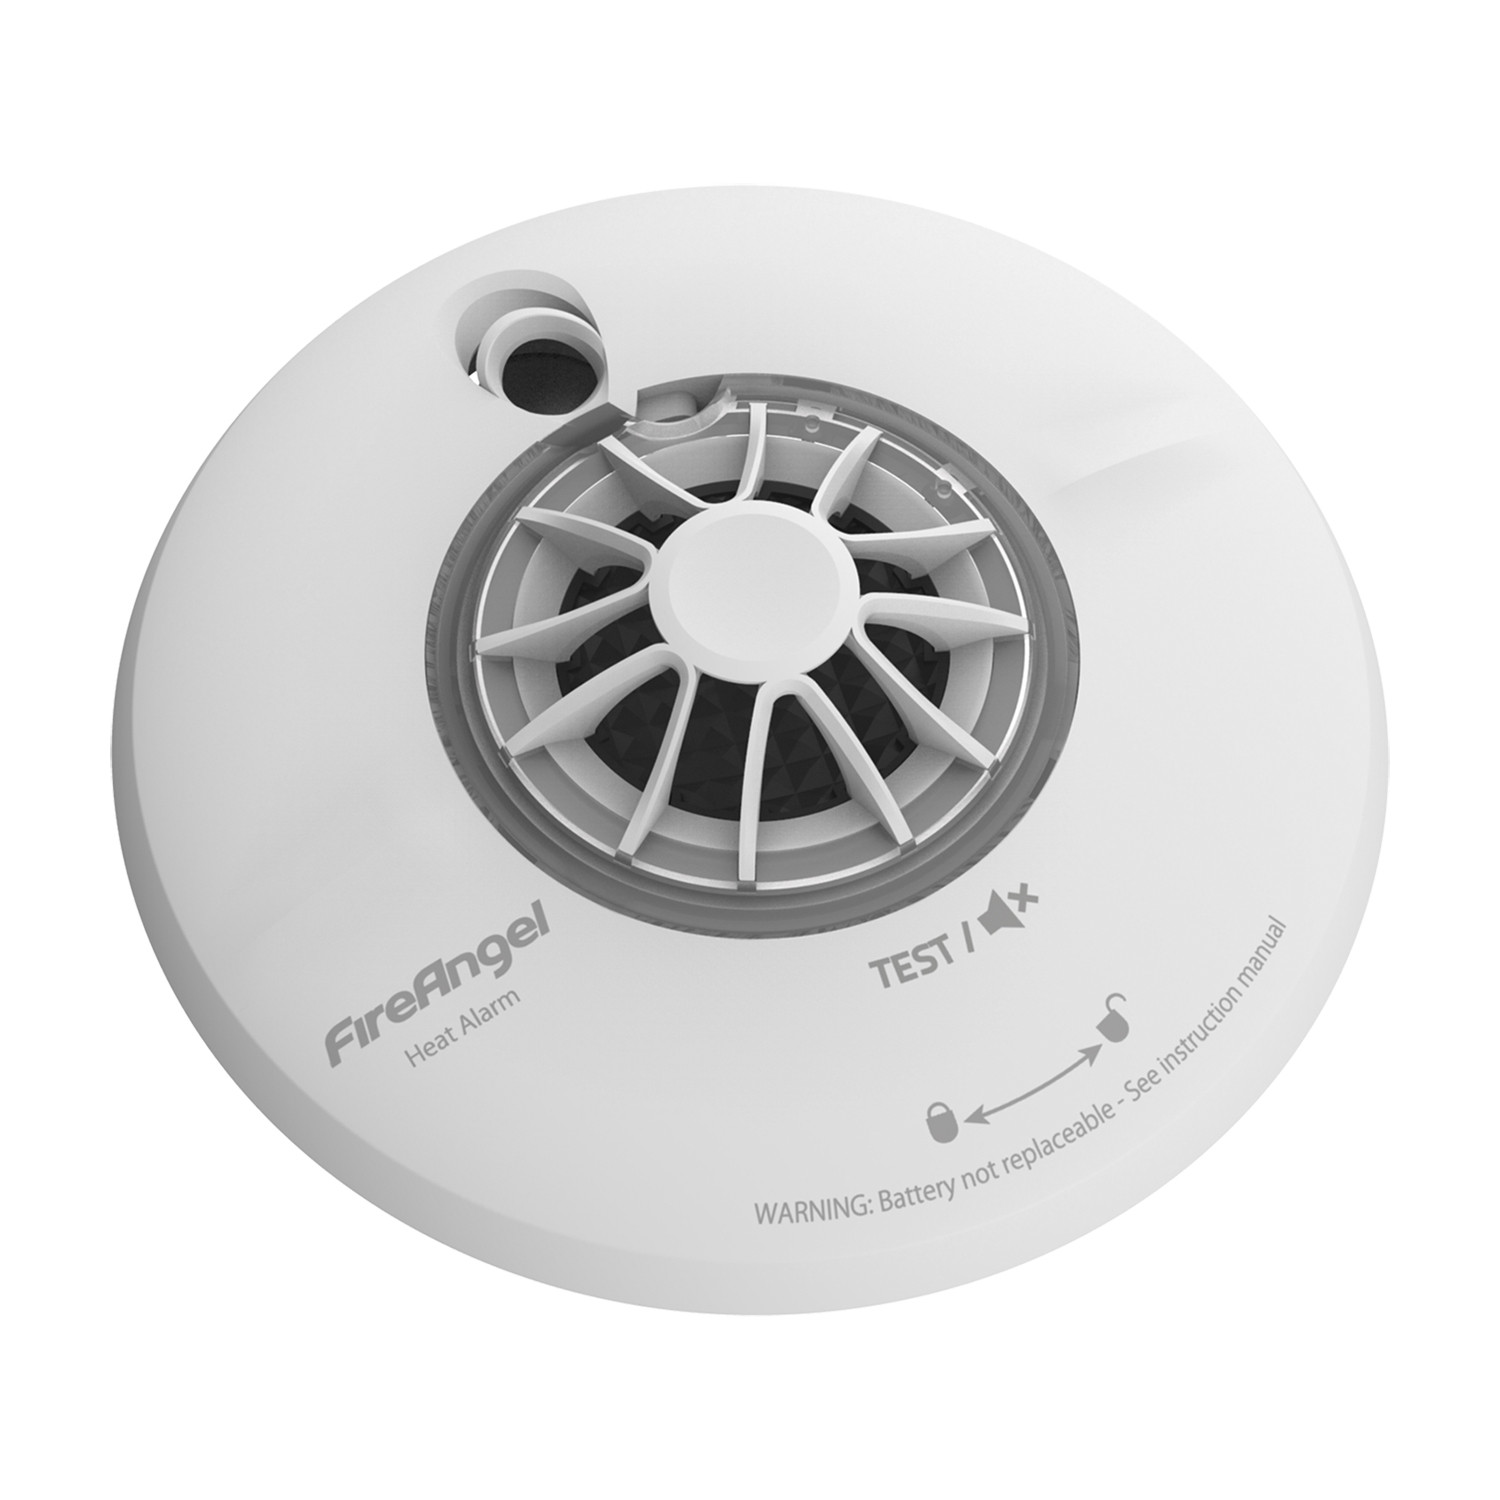 FireAngel 10 Year Battery Heat Alarm Image 2